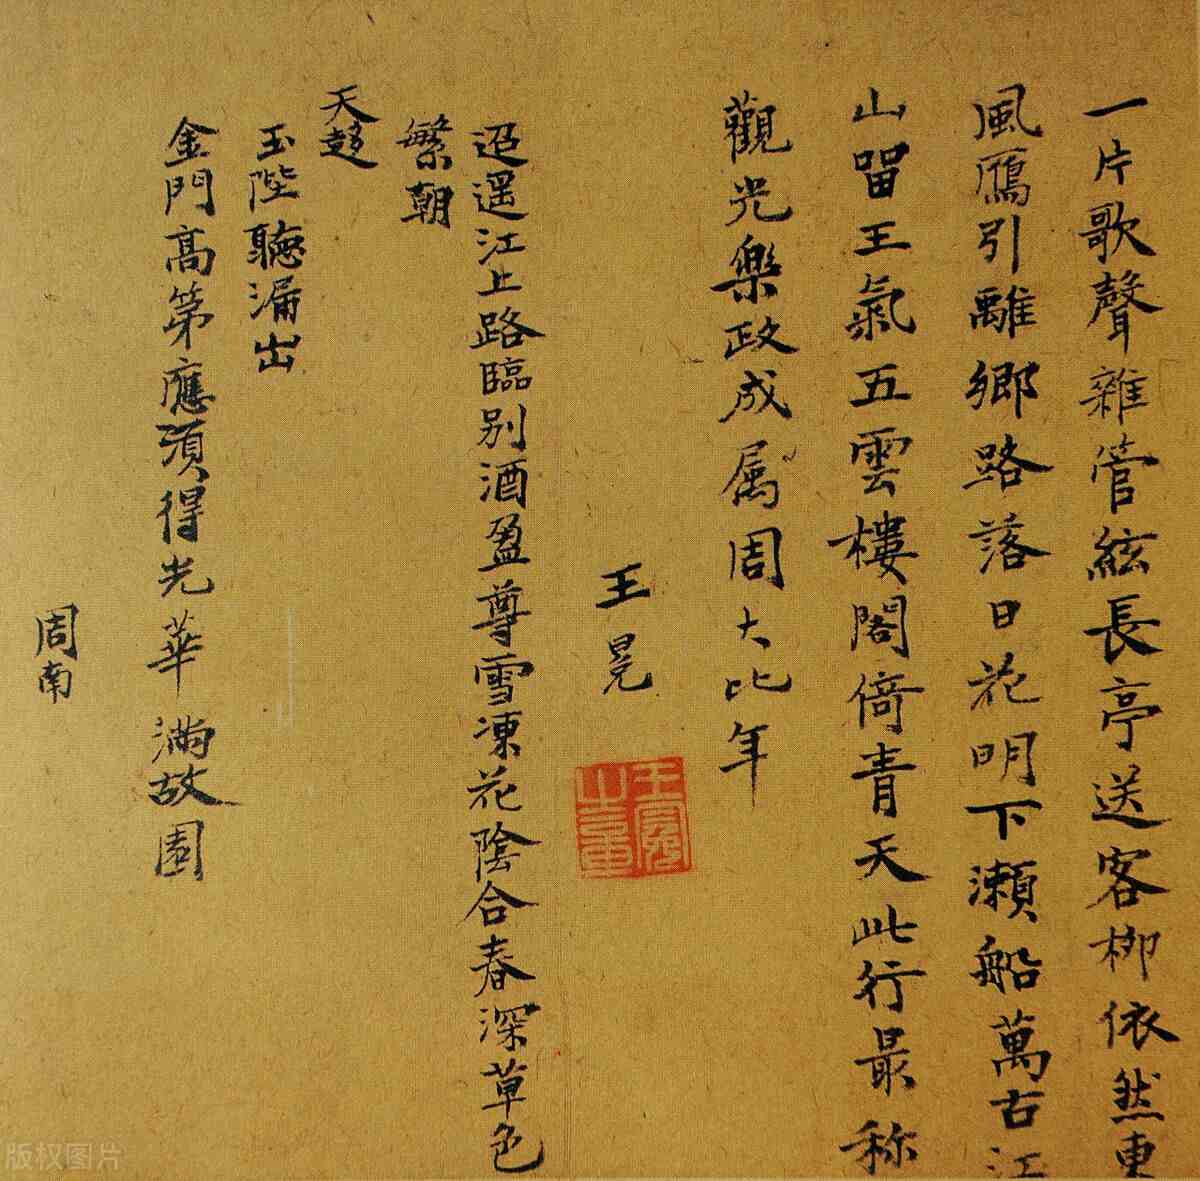 《儒林外史》之王冕篇:吴敬梓笔下一个理想的中国读书人形象